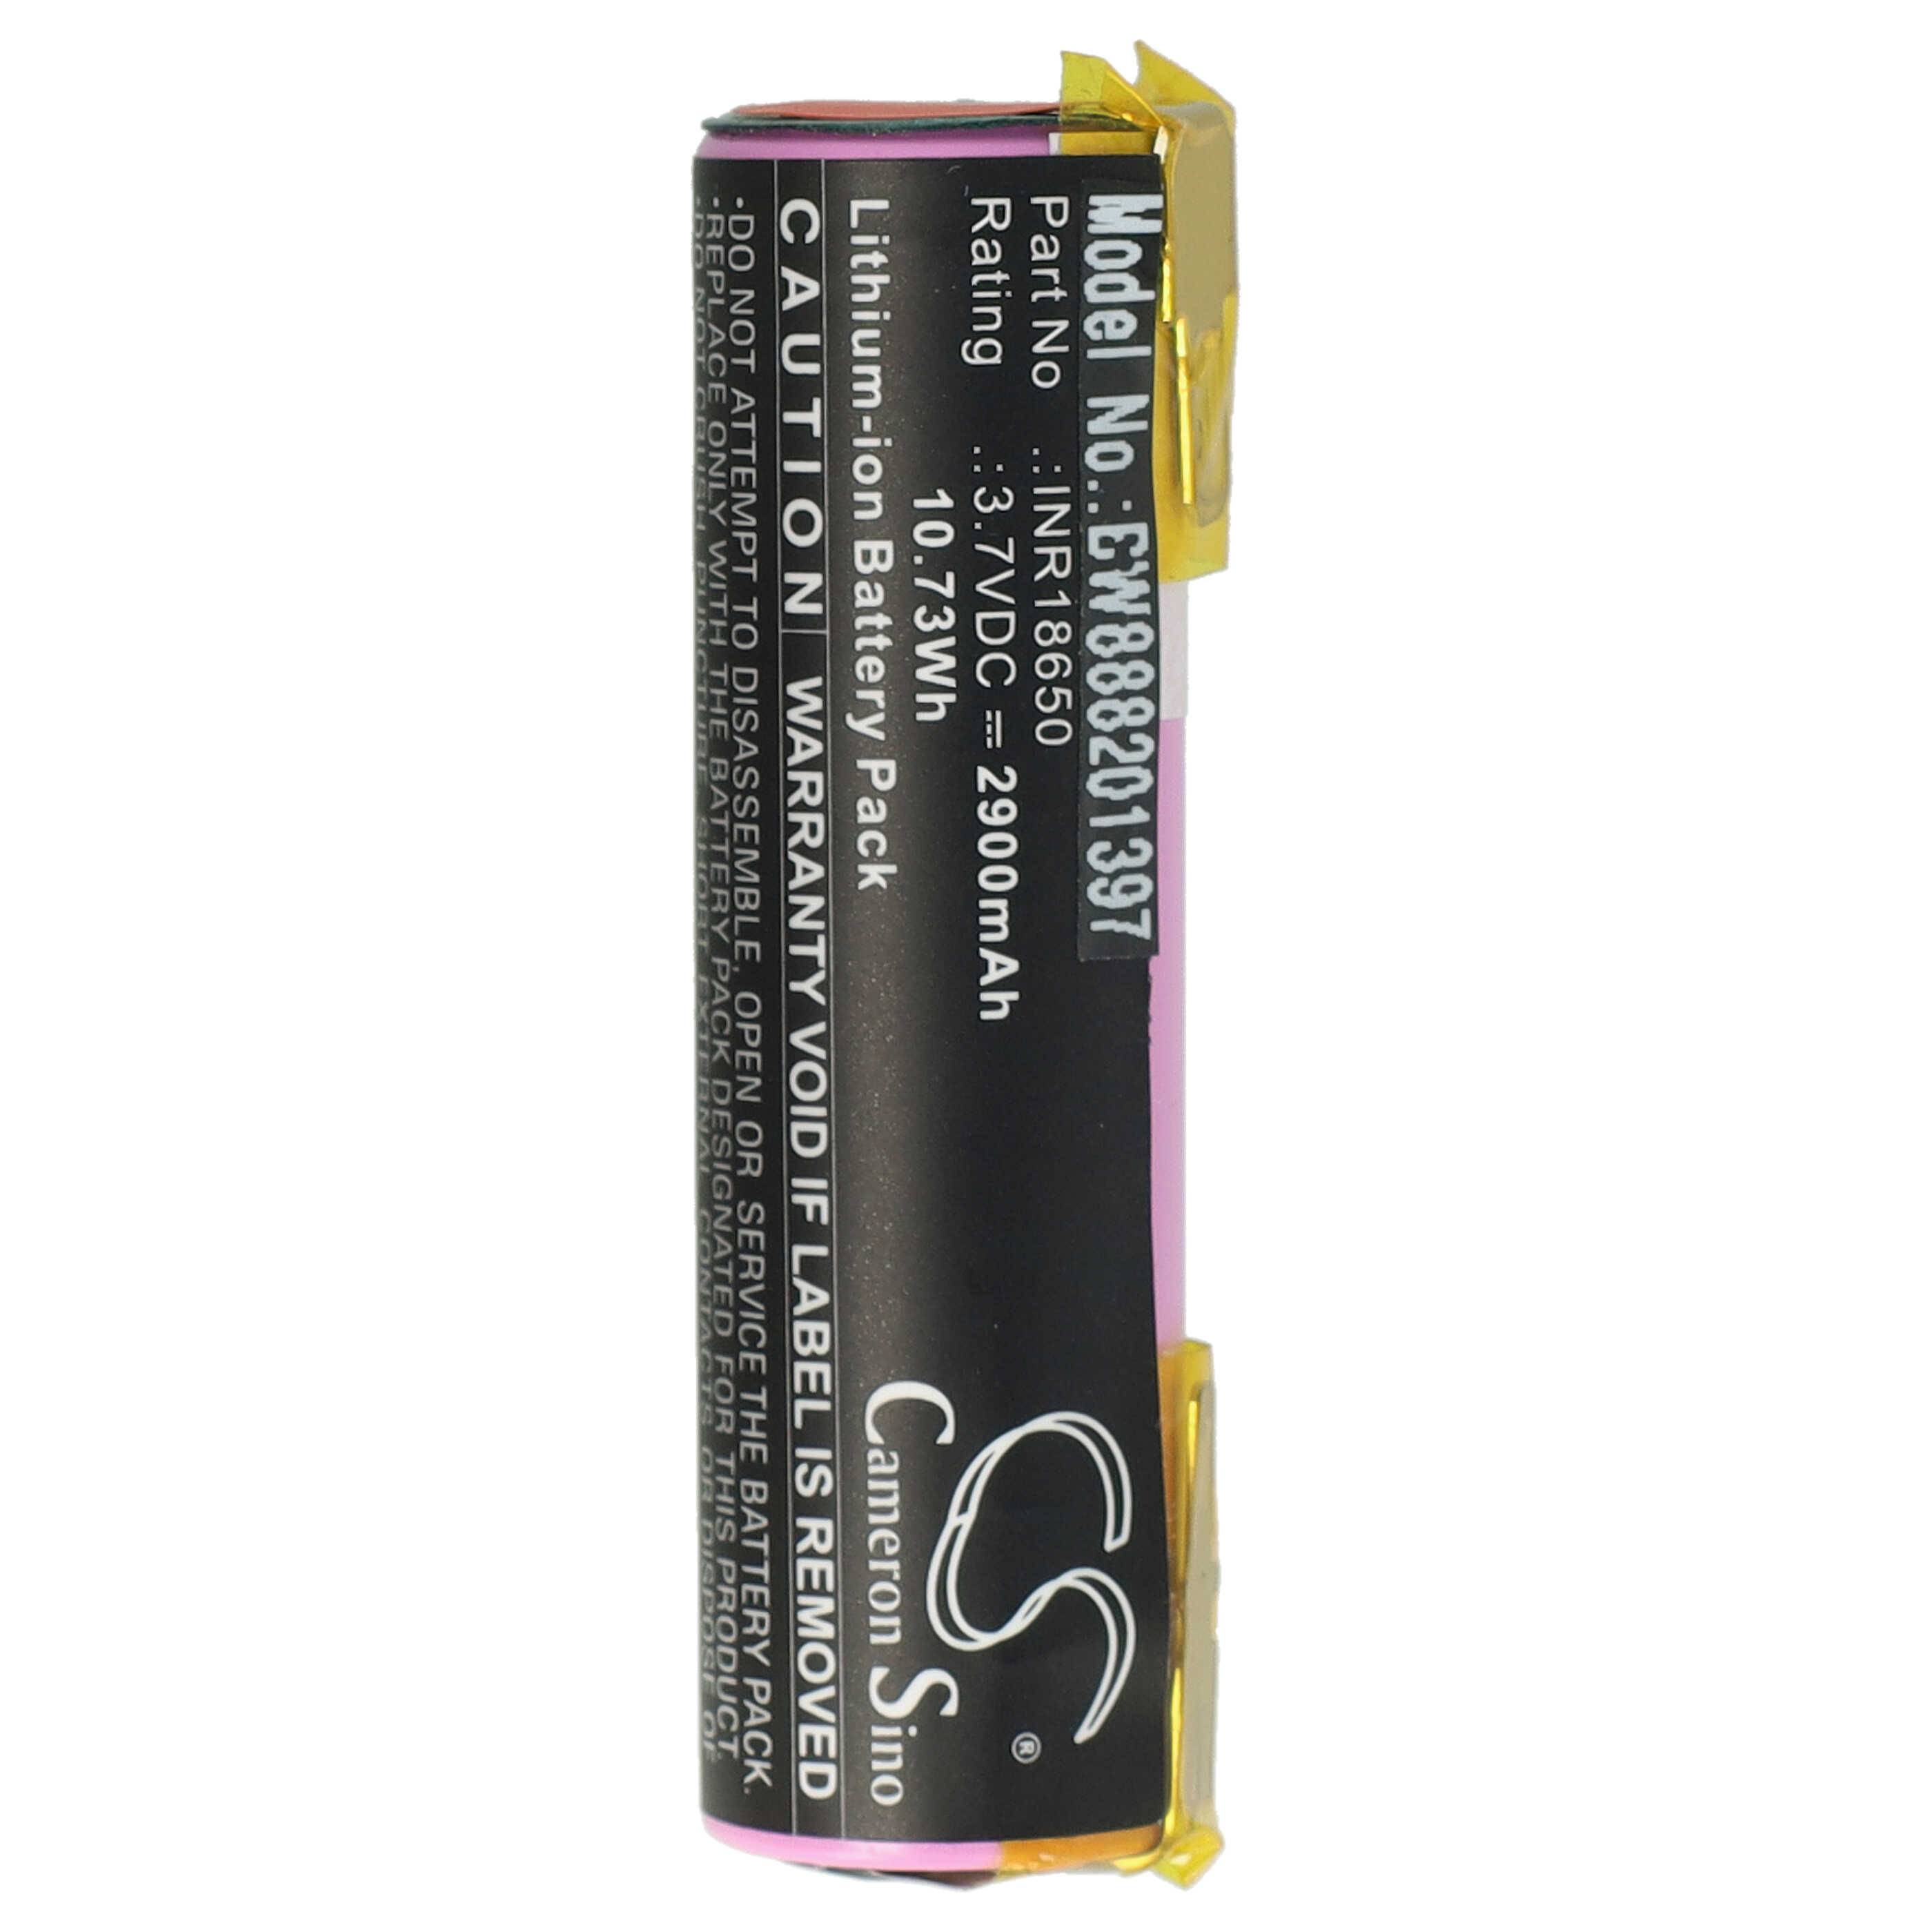 Batteria per attrezzo sostituisce Atika 08829-00.640.00, 08800-000.640.00, 302380 - 2900 mAh, 3,7 V, Li-Ion